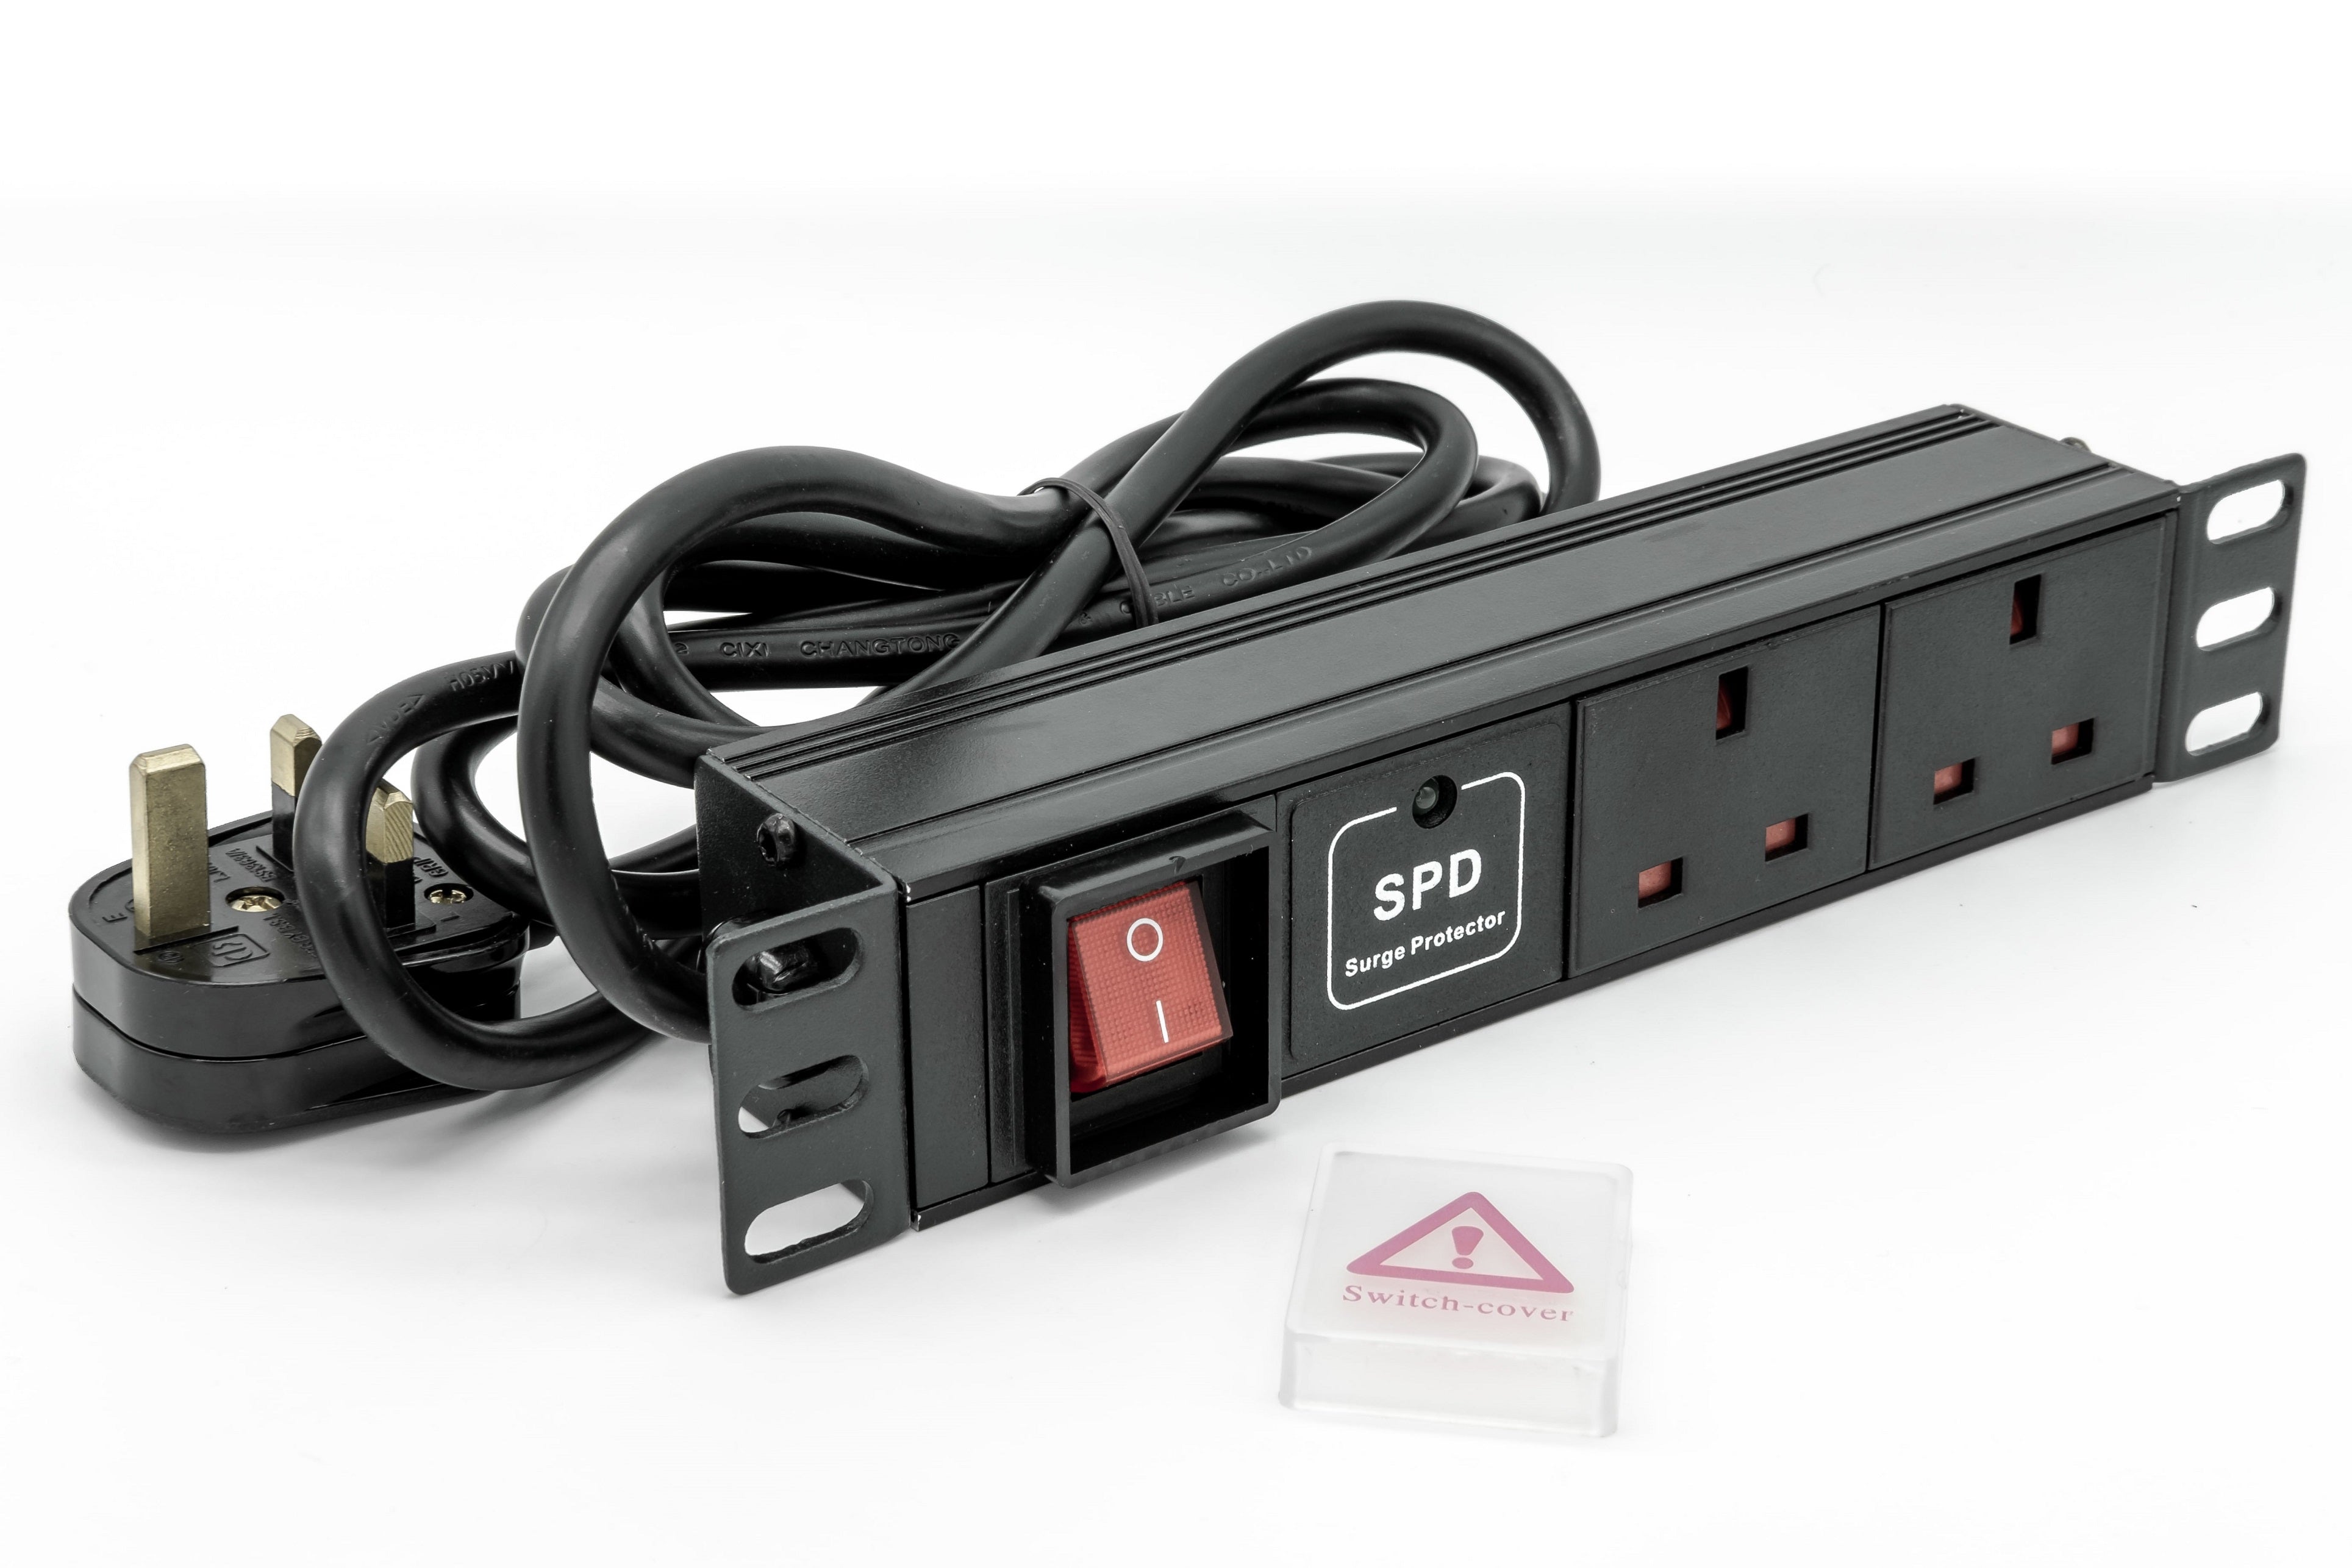 1U 10"/SoHo 2 Way Horizontal Switched 13A UK Sockets to UK Plug PDU with Surge Protection & 2.5m Flex (Rackmount) - Netbit UK